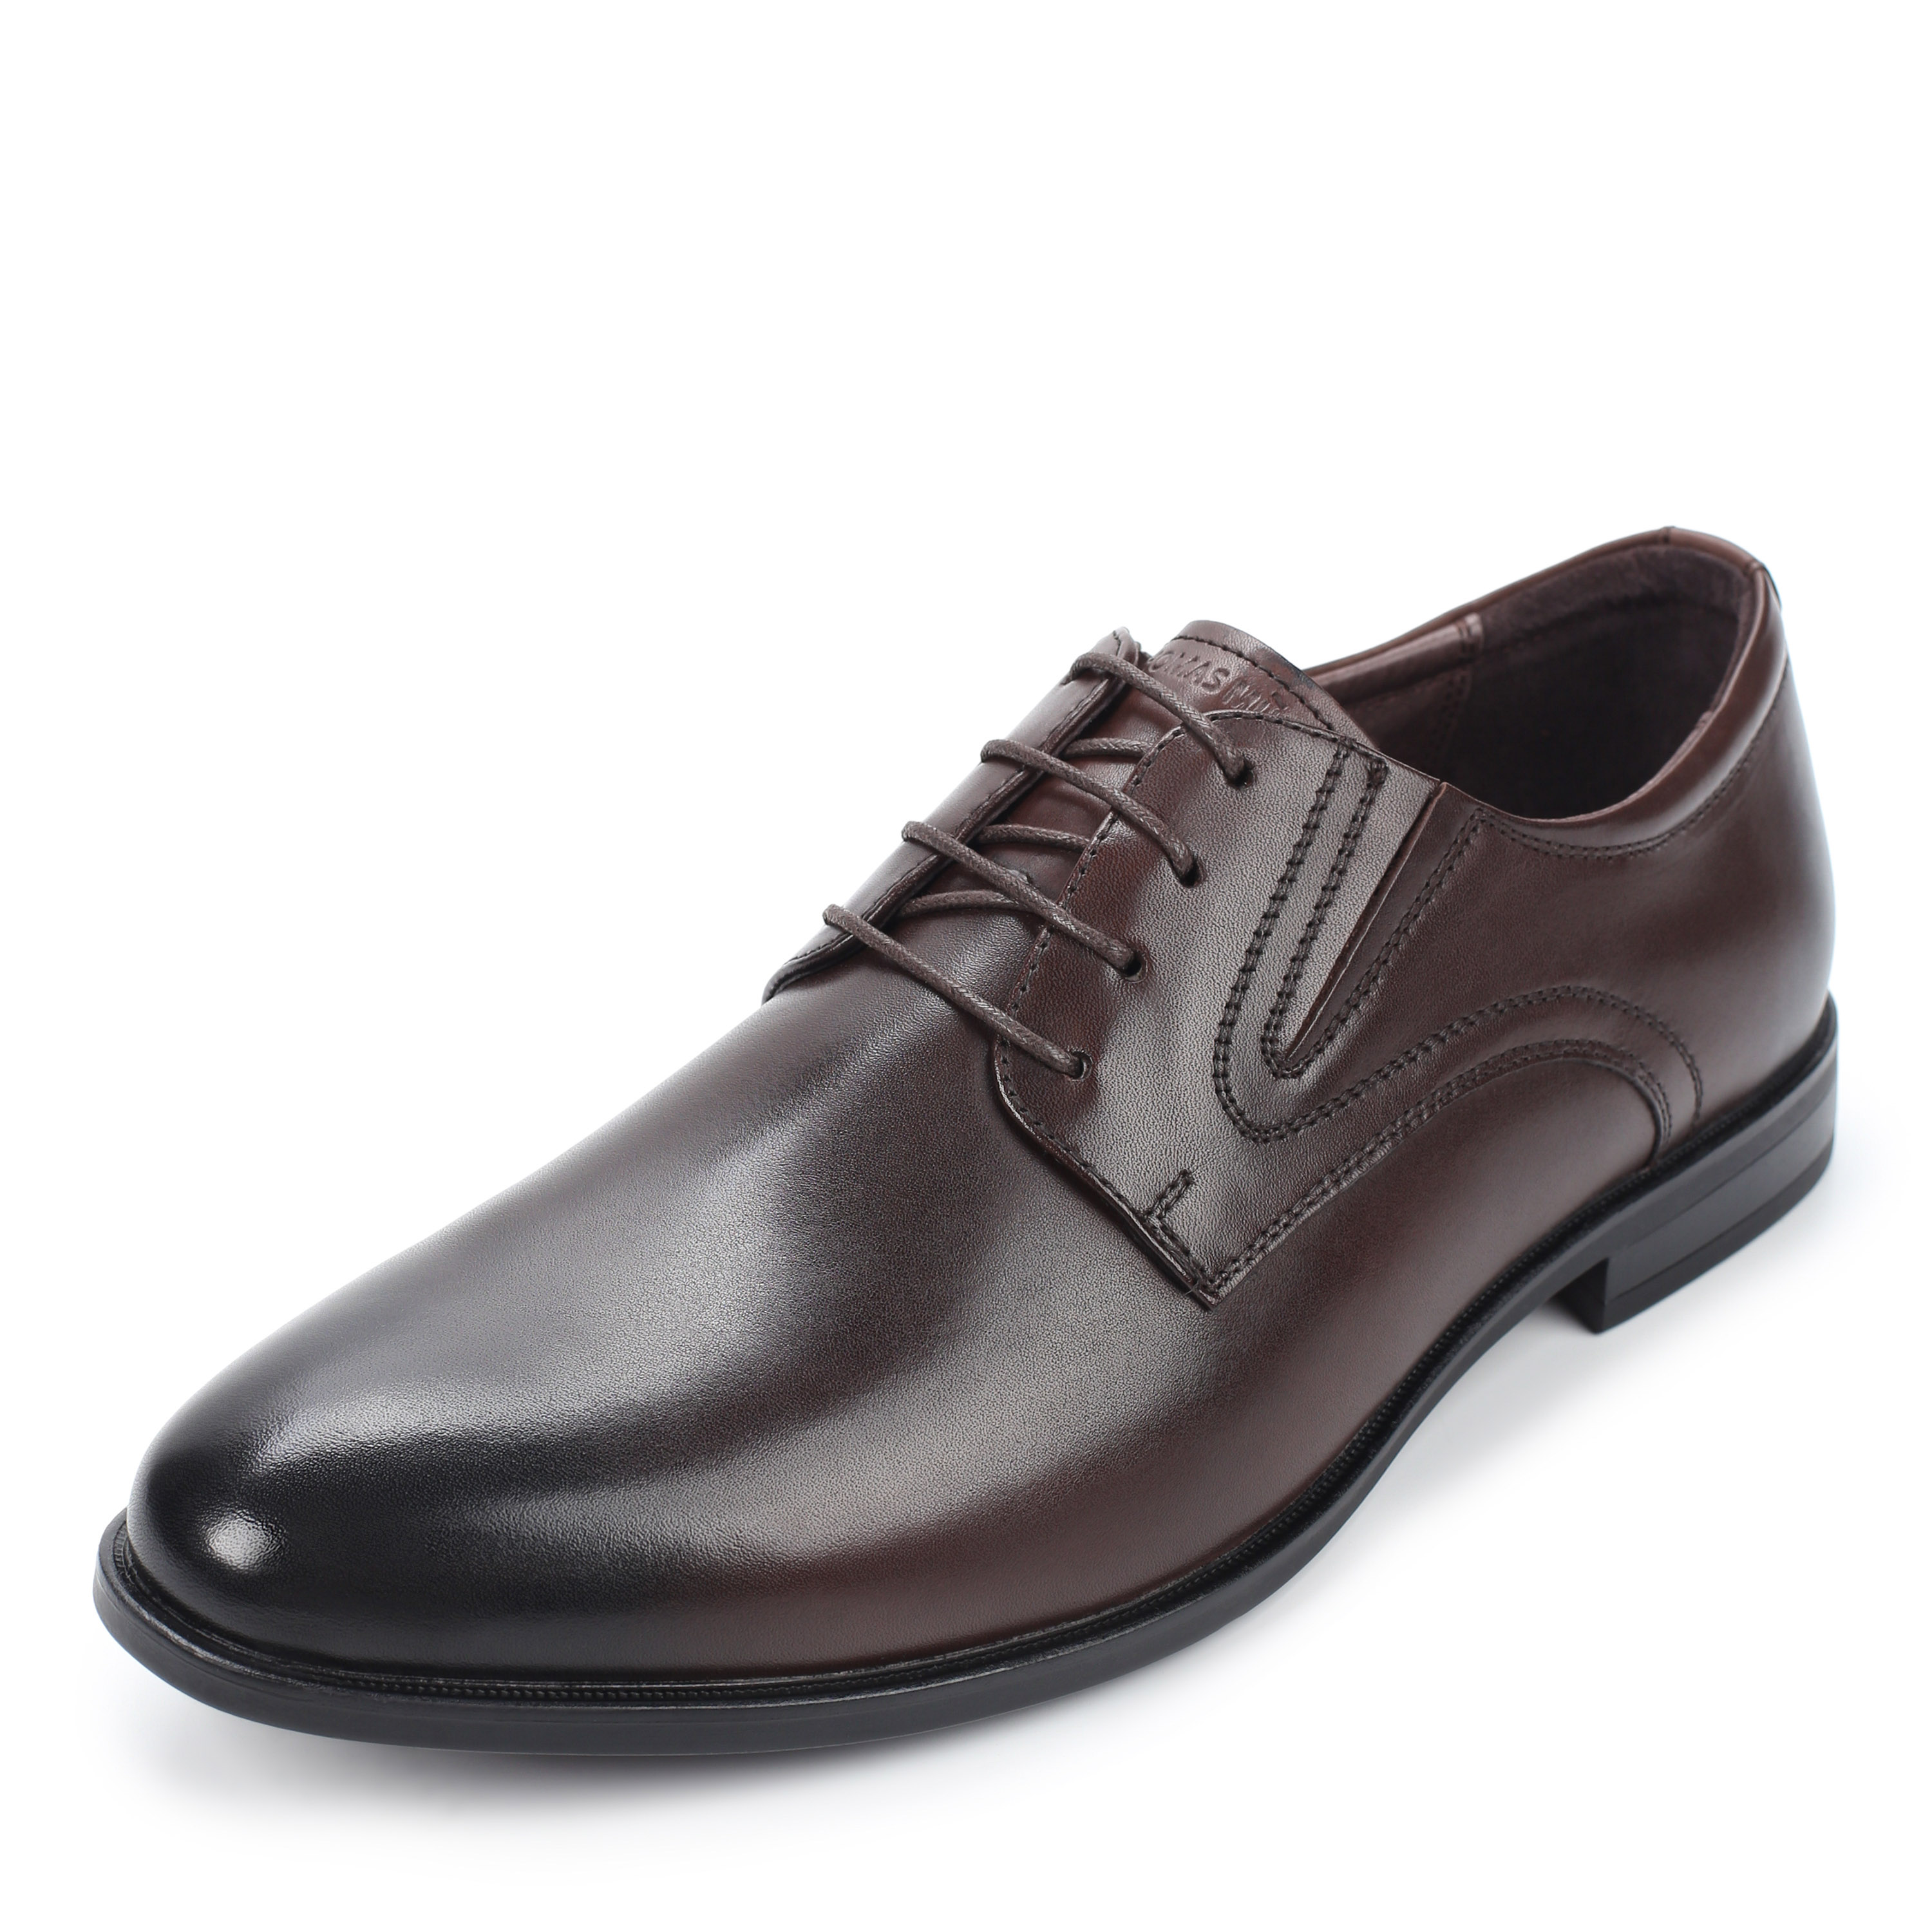 Туфли Thomas Munz 058-407A-1109 058-407A-1109, цвет коричневый, размер 44 полуботинки - фото 2